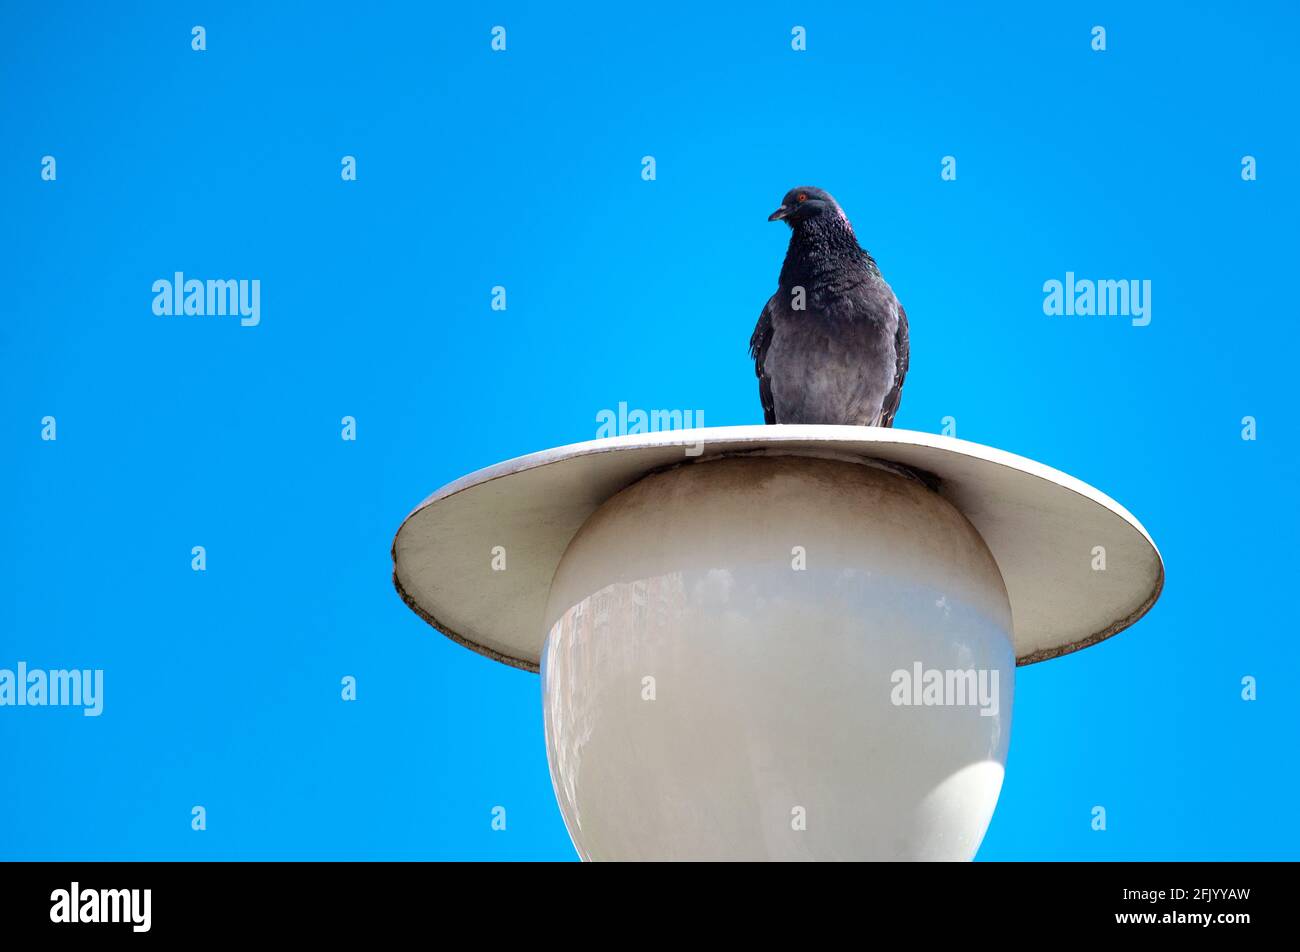 Die Taube sitzt auf einer Laterne gegen den klaren blauen Himmel. Stadttaube, die auf einer weißen Straßenlaterne im Park sitzt. Stockfoto